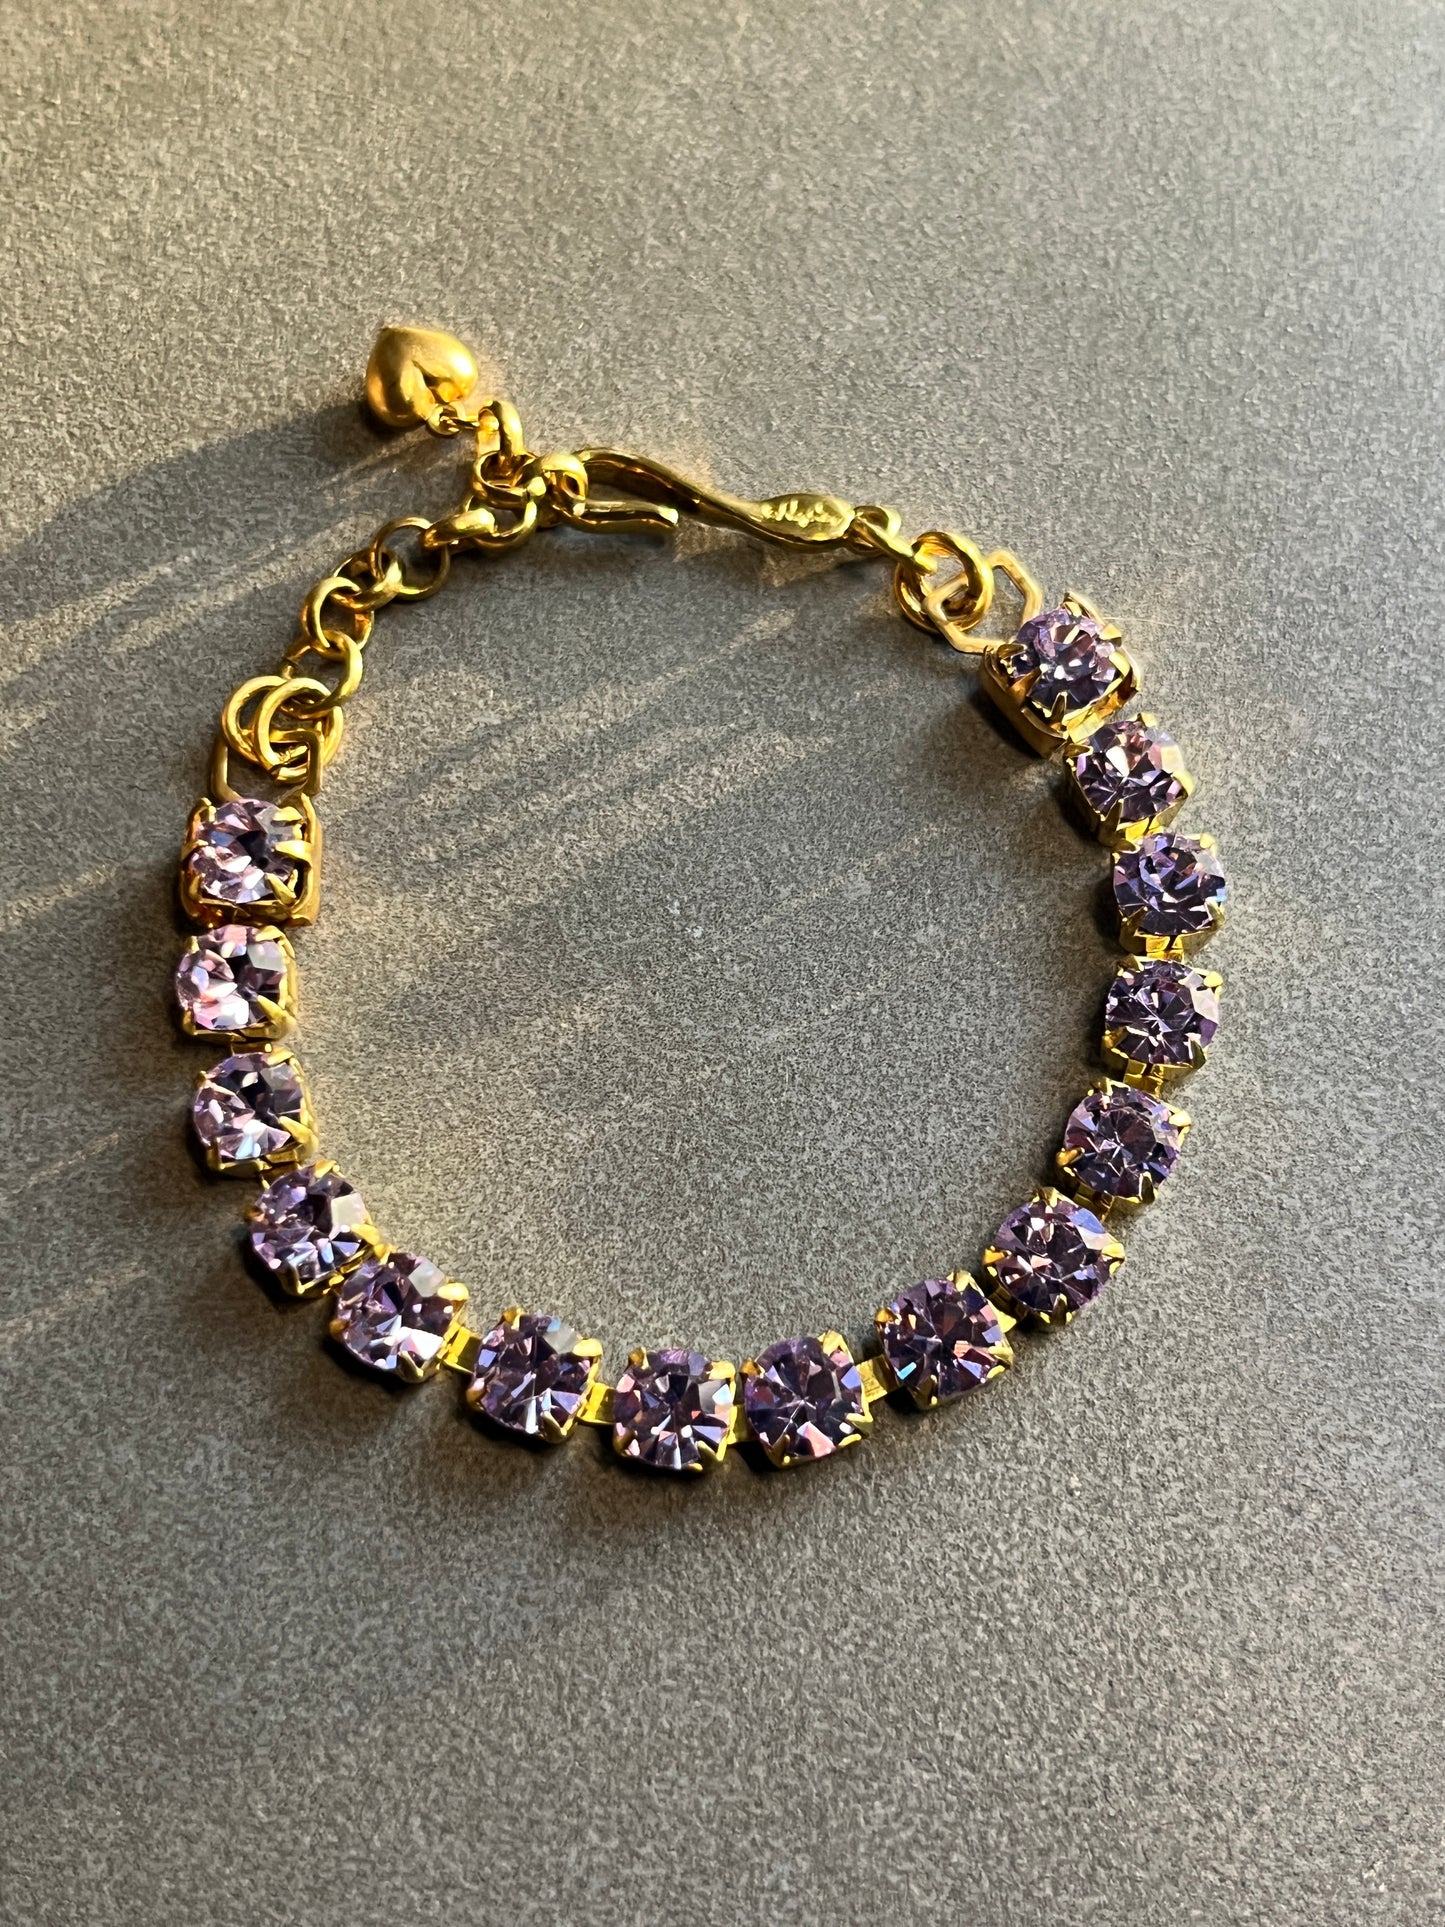 Beautiful Preciosa Amethyst Crystal Chain Bracelet